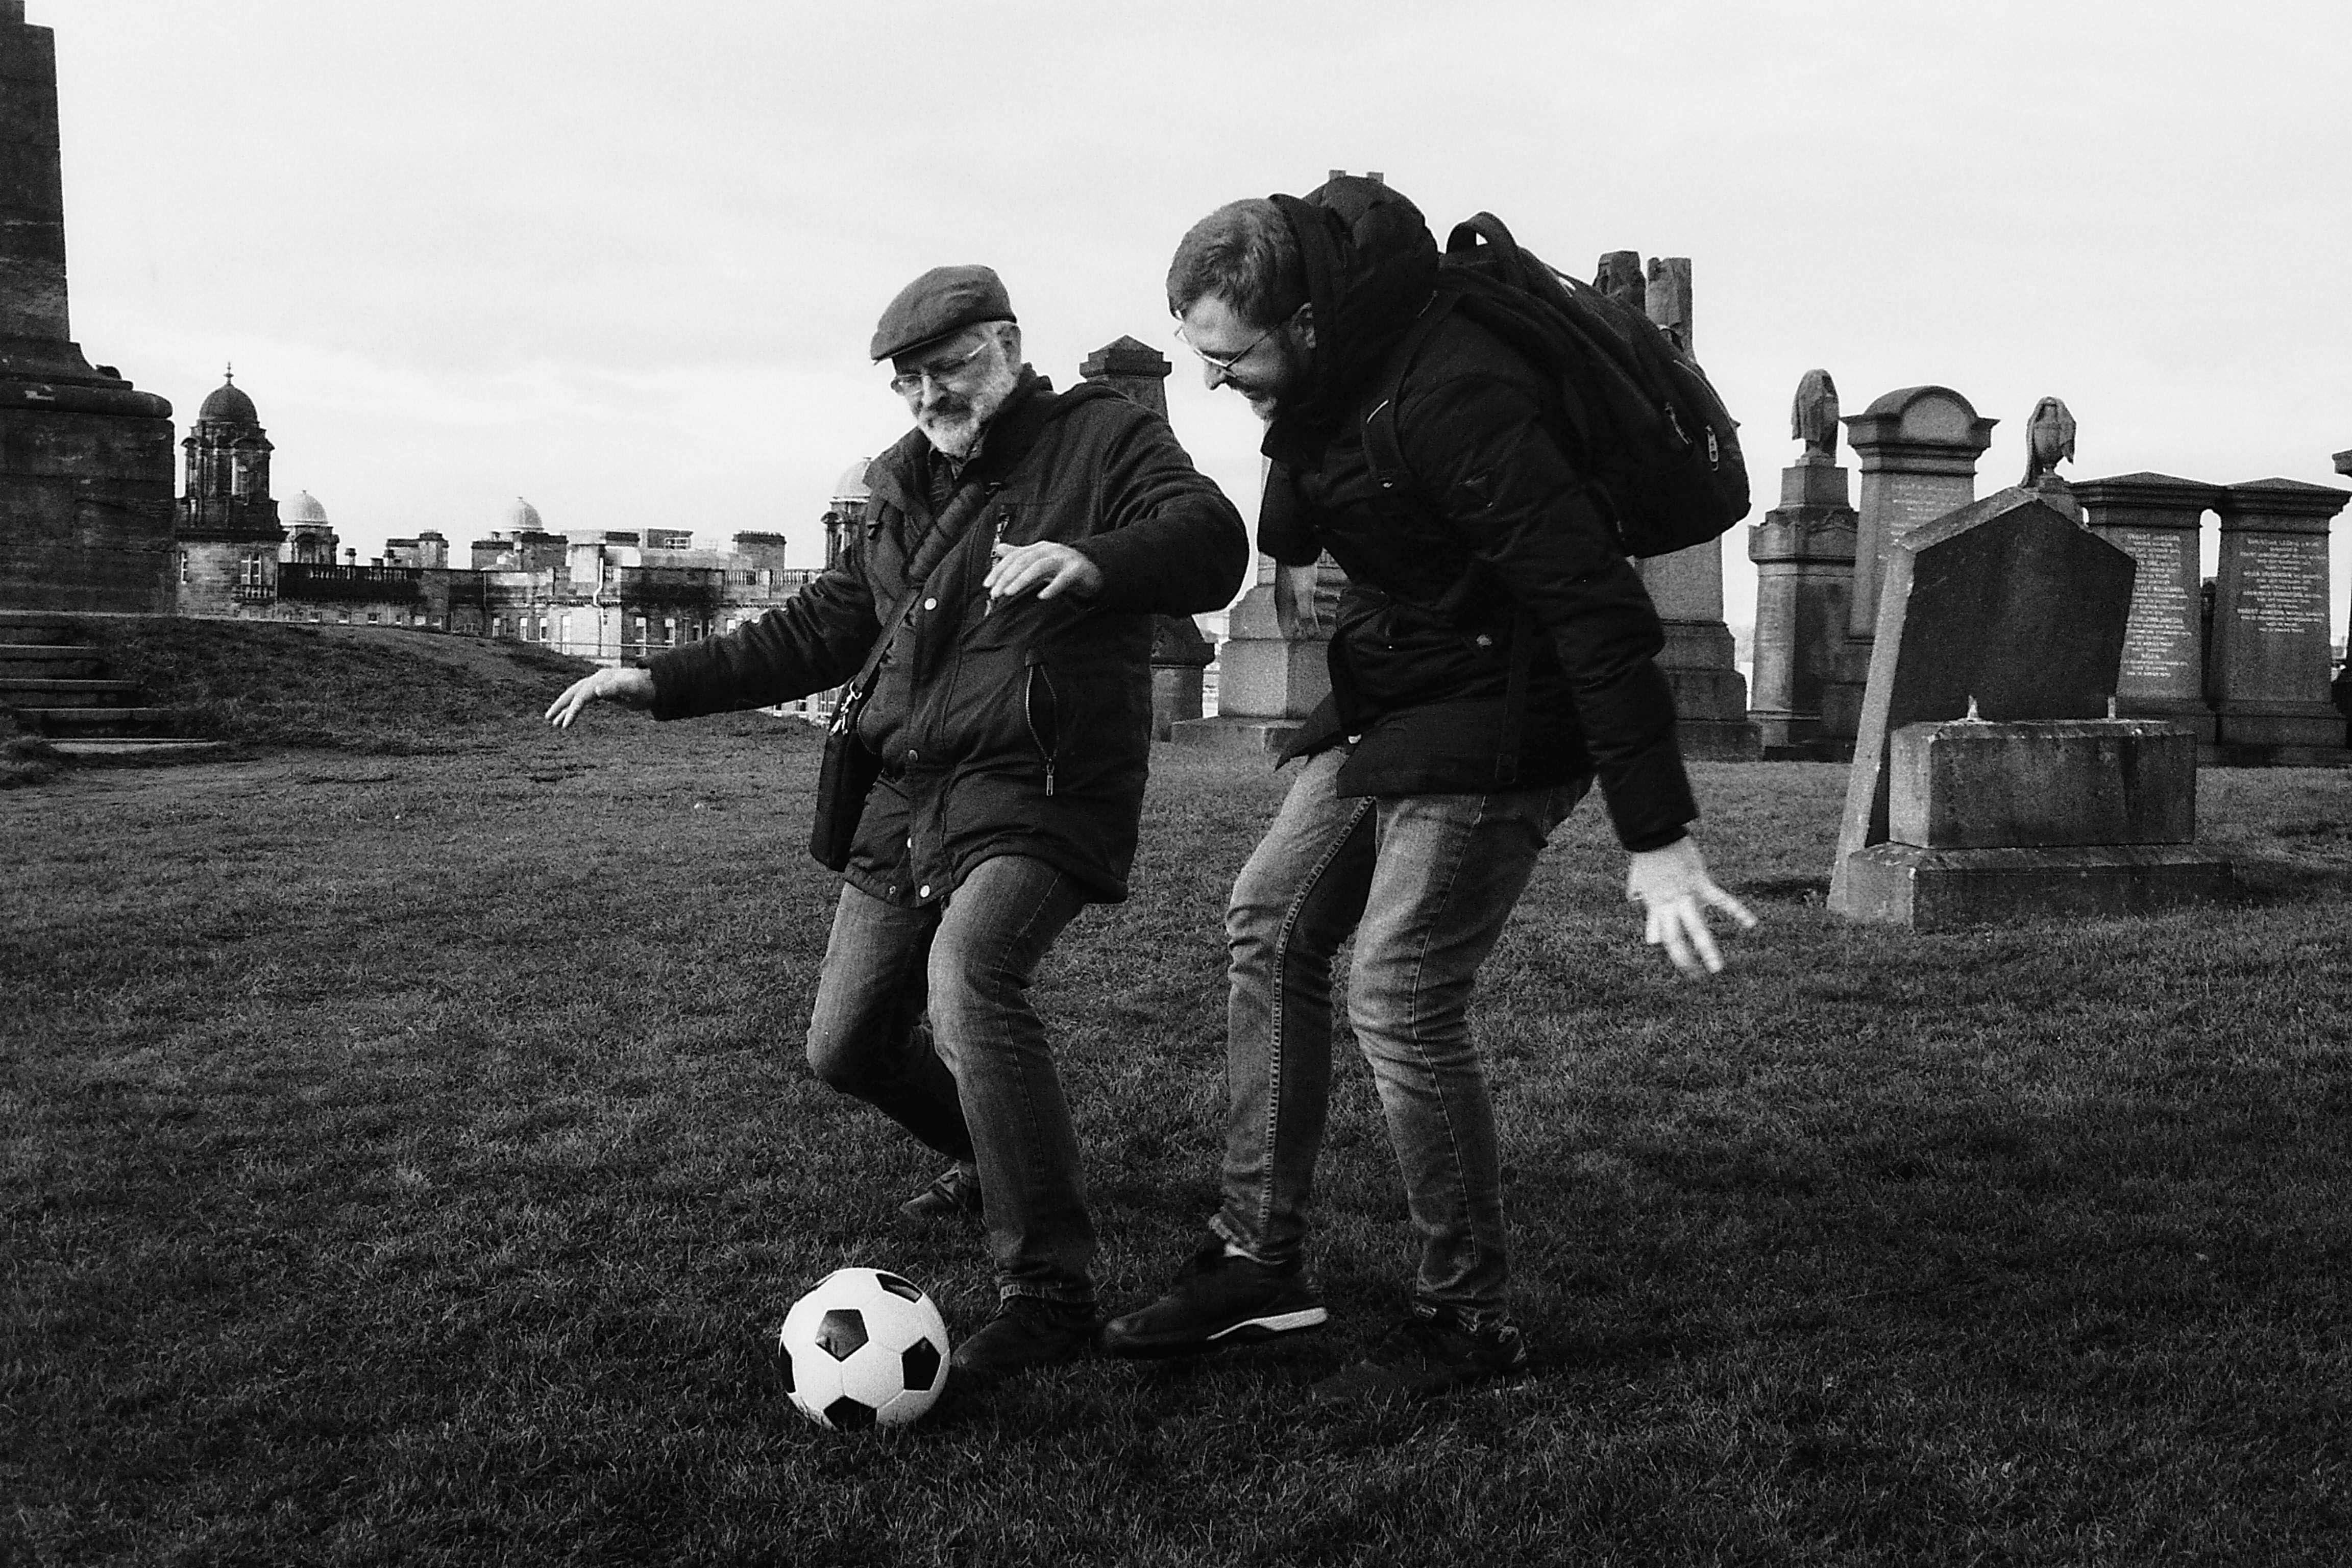 на&nbsp;фото Редас Диржис (слева) и&nbsp;мне неизвестный мэн играют в&nbsp;футбол, возможно трехсторонний. Фото взято с&nbsp;офф. сайта Алитусской биеннале